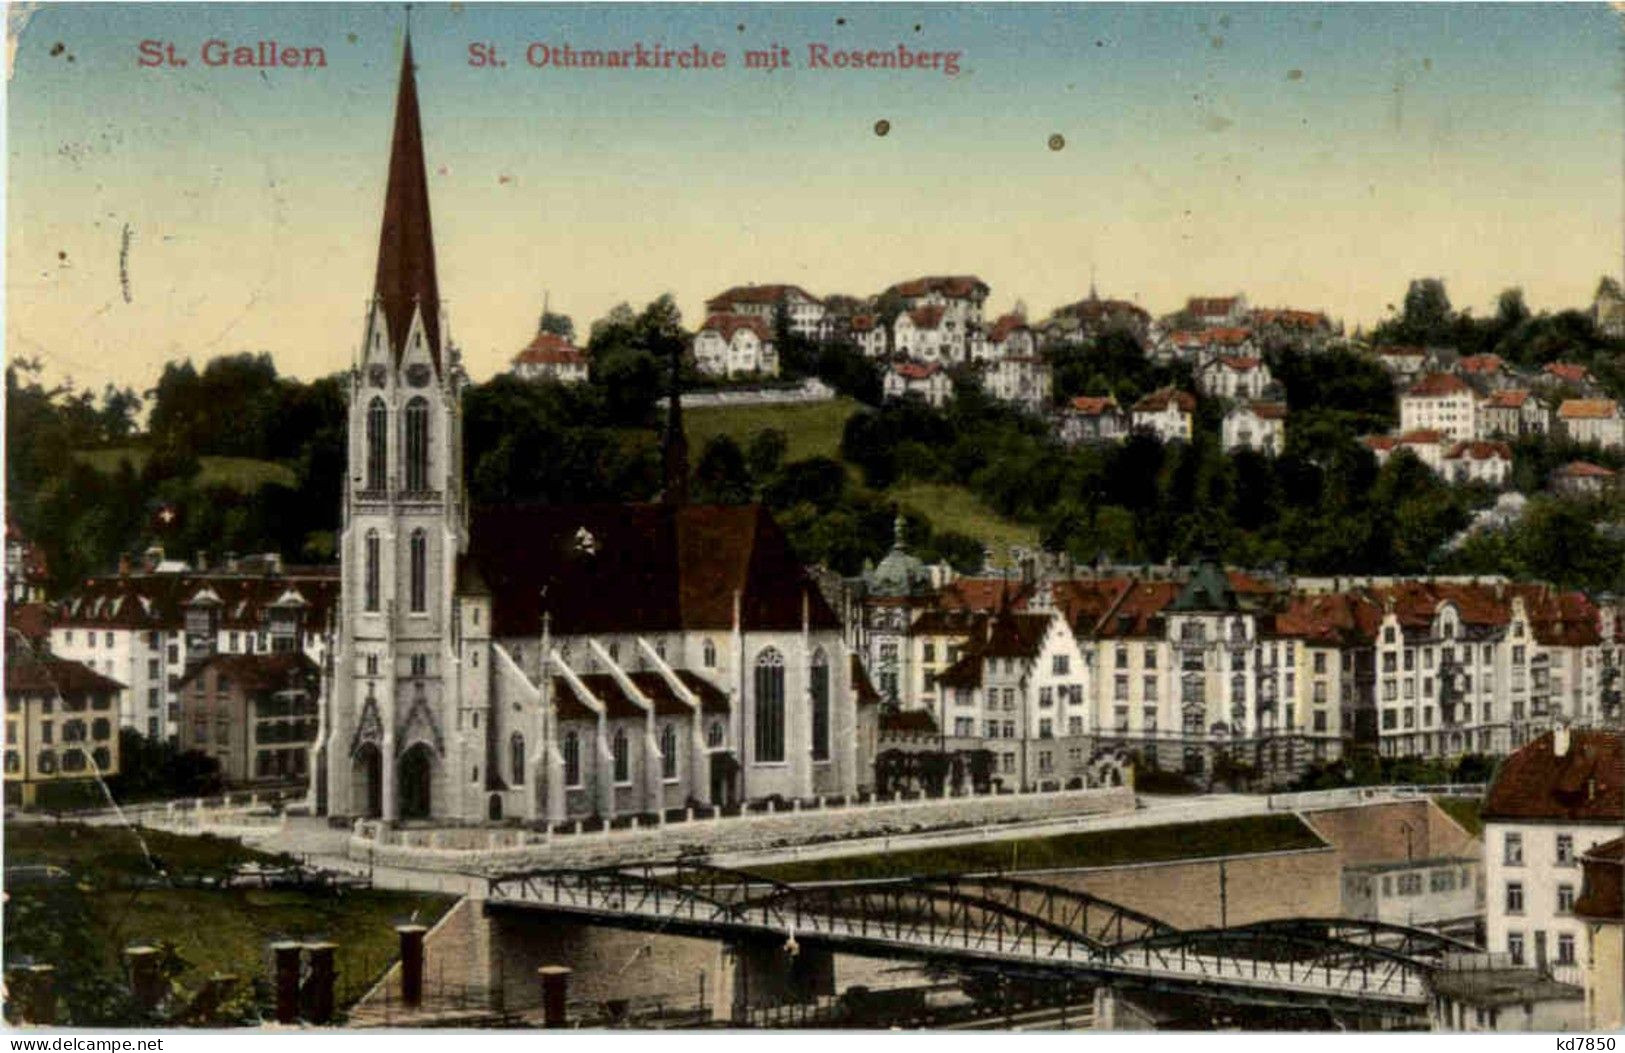 St. Gallen - St. Othmarkirche - St. Gallen